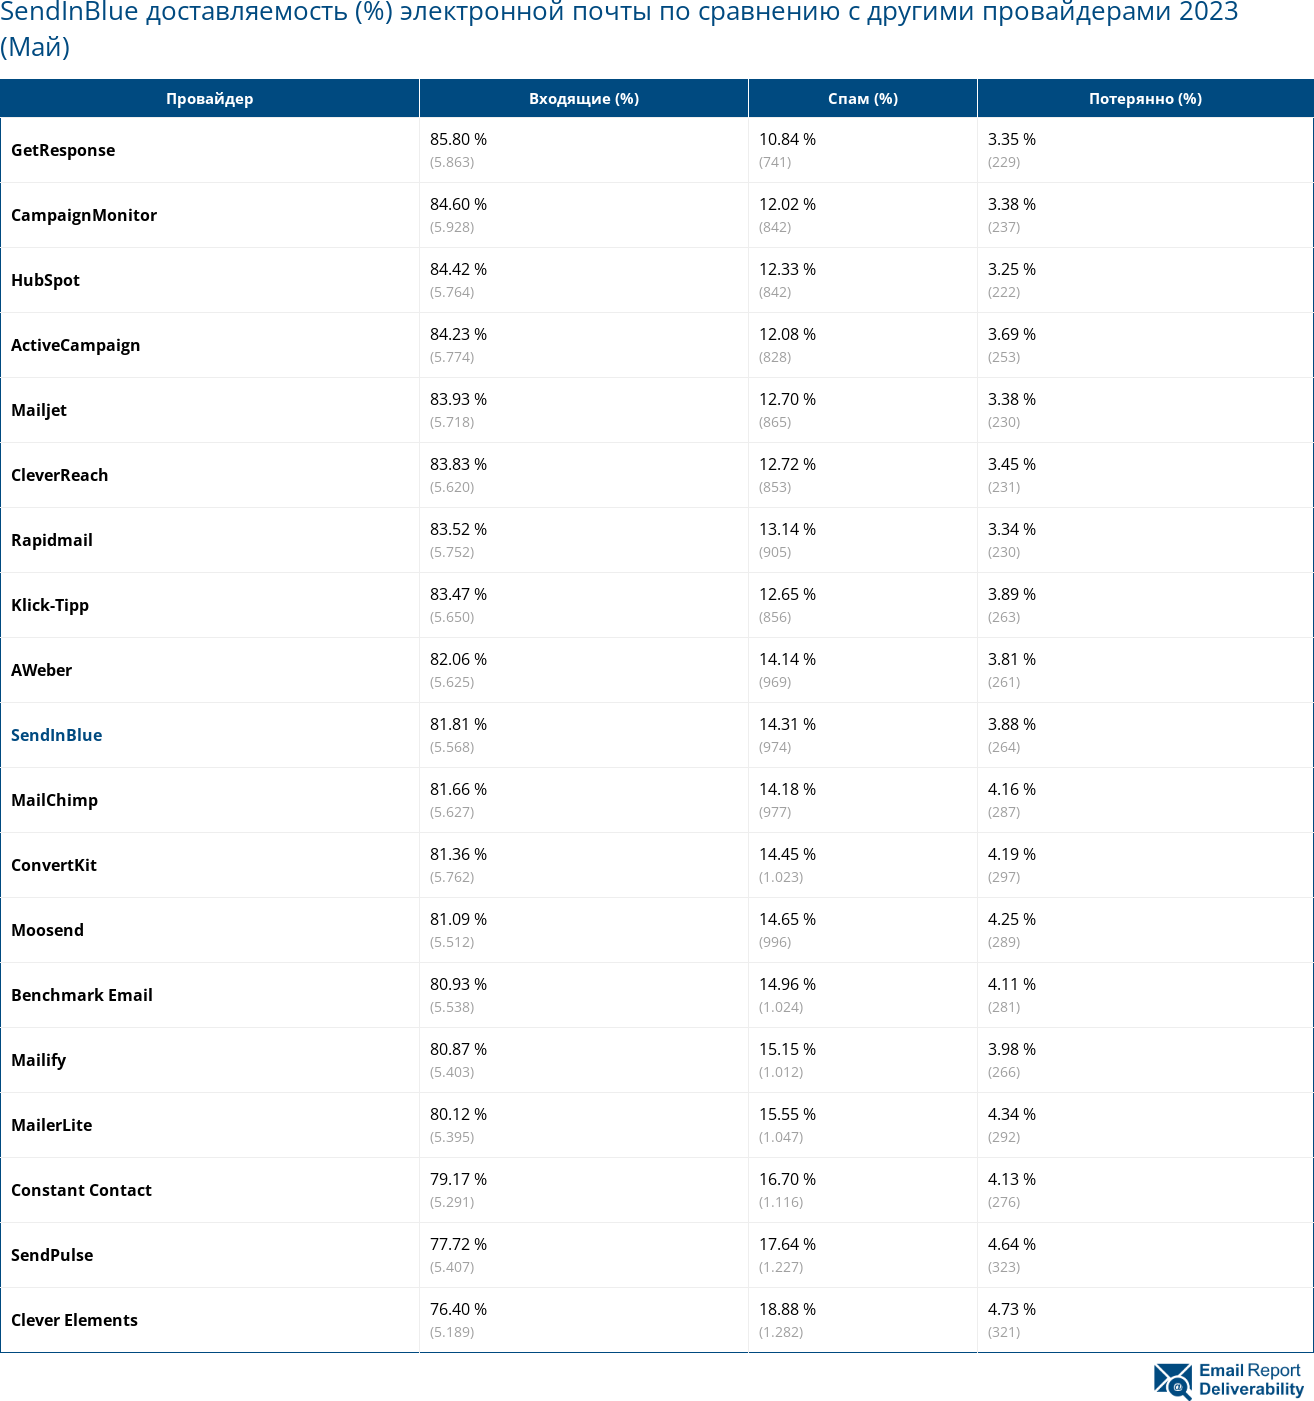 SendInBlue доставляемость (%) электронной почты по сравнению с другими провайдерами 2023 (Май)